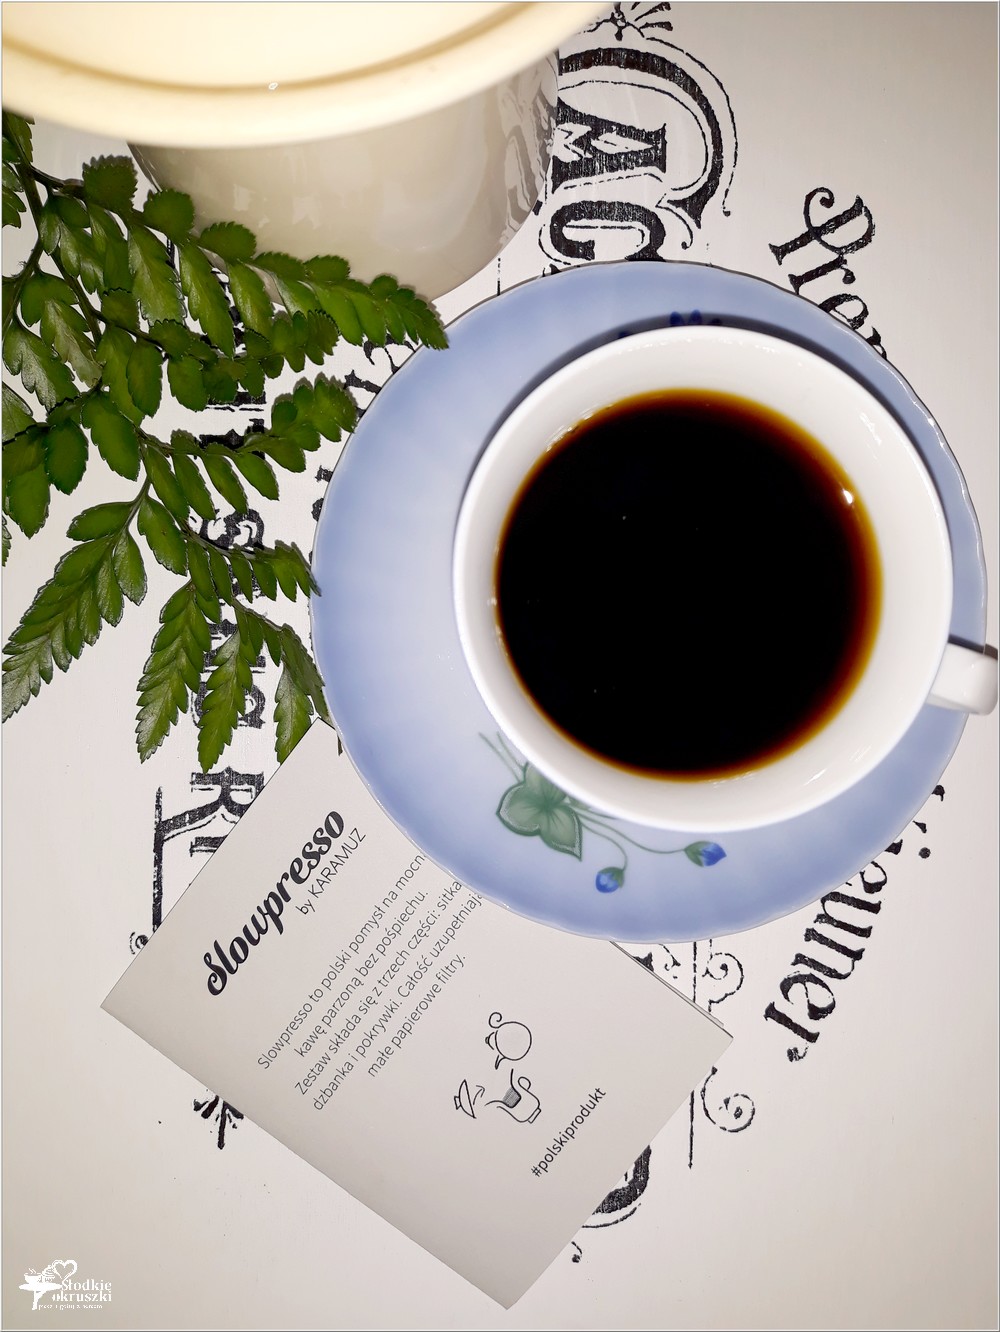 Slowpresso - sposób na dobrą kawę bez pośpiechu (2)